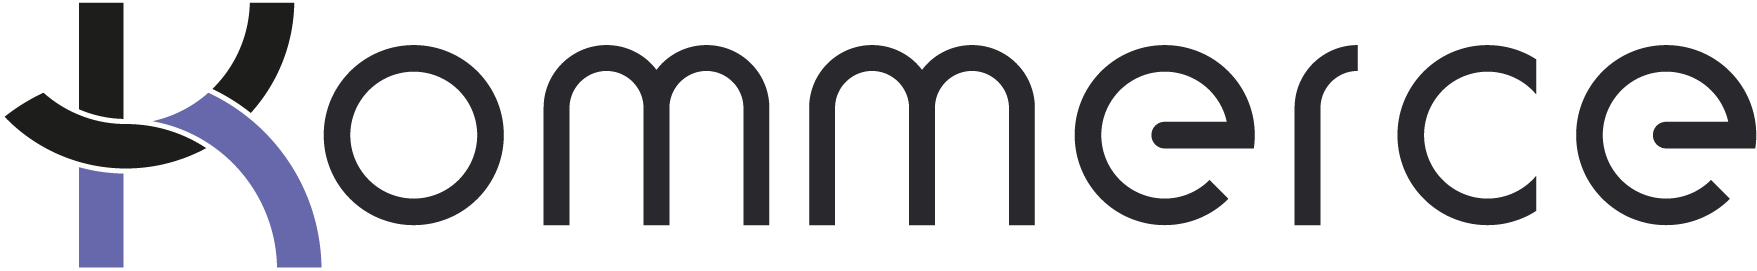 logo-kommerce